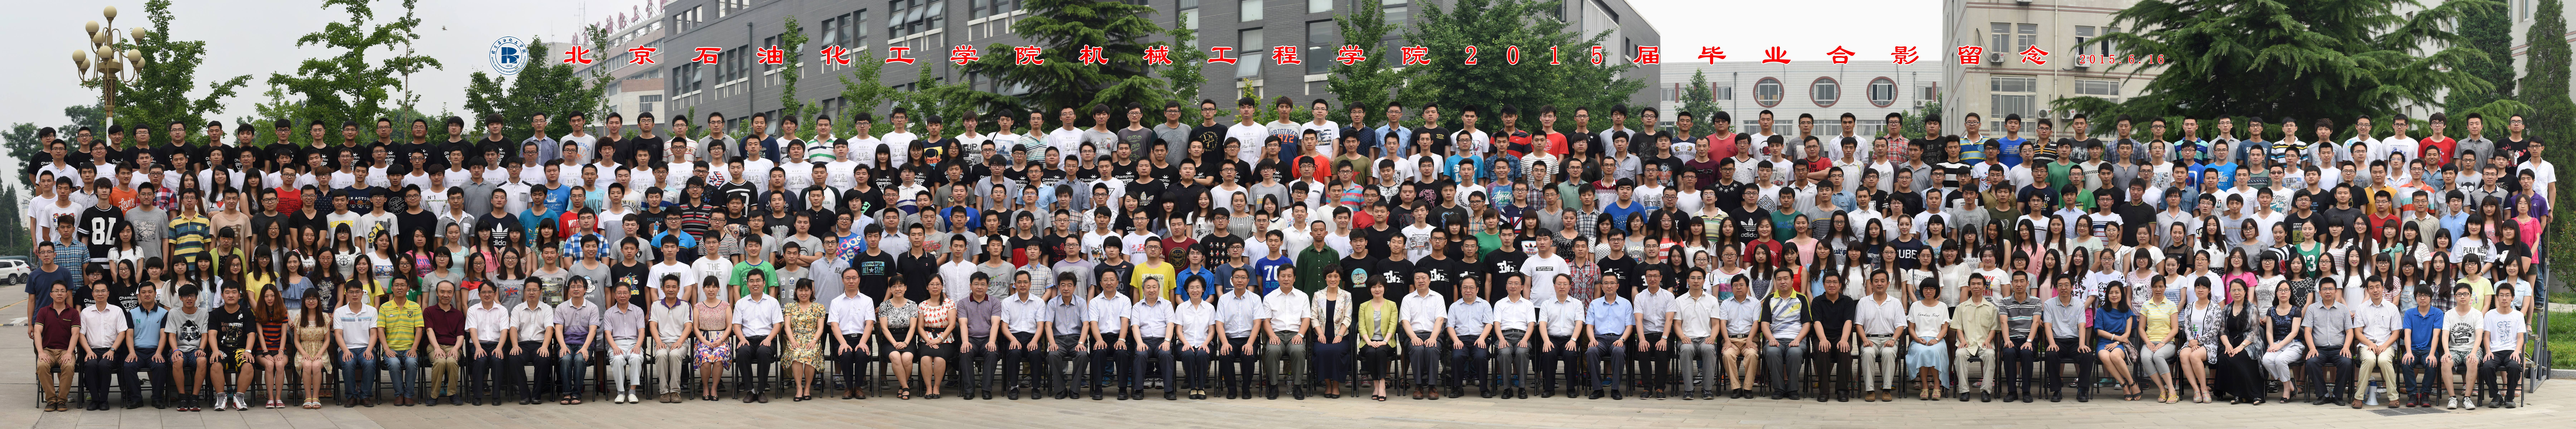 北京石油化工学院机械工程学院2015届毕业生合影-1.jpg